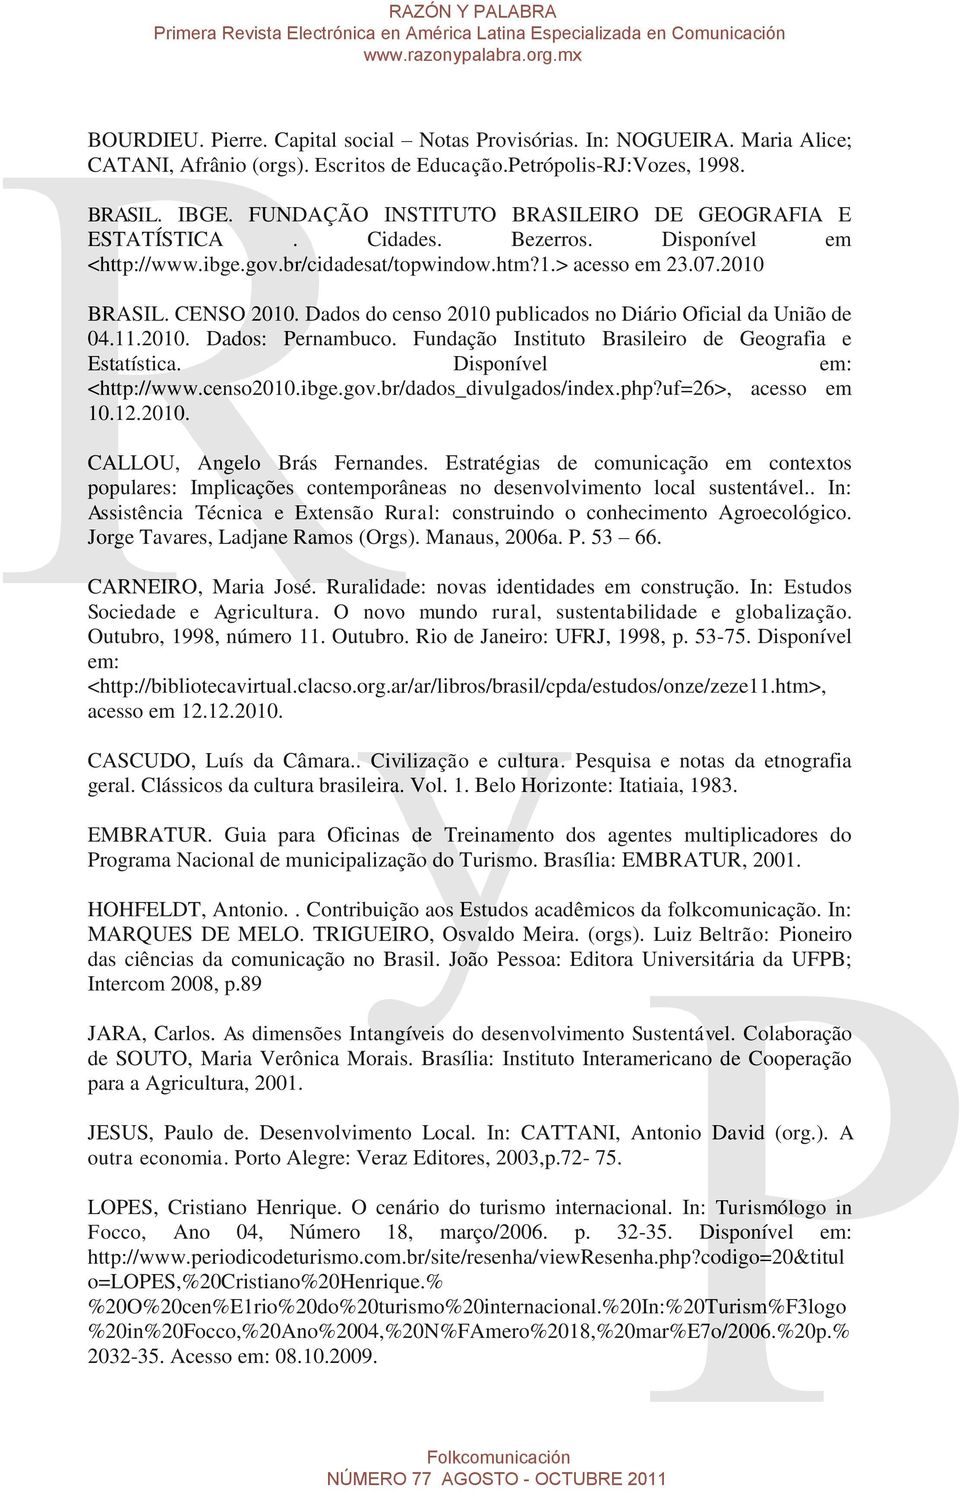 Dados do censo 2010 publicados no Diário Oficial da União de 04.11.2010. Dados: Pernambuco. Fundação Instituto Brasileiro de Geografia e Estatística. Disponível em: <http://www.censo2010.ibge.gov.